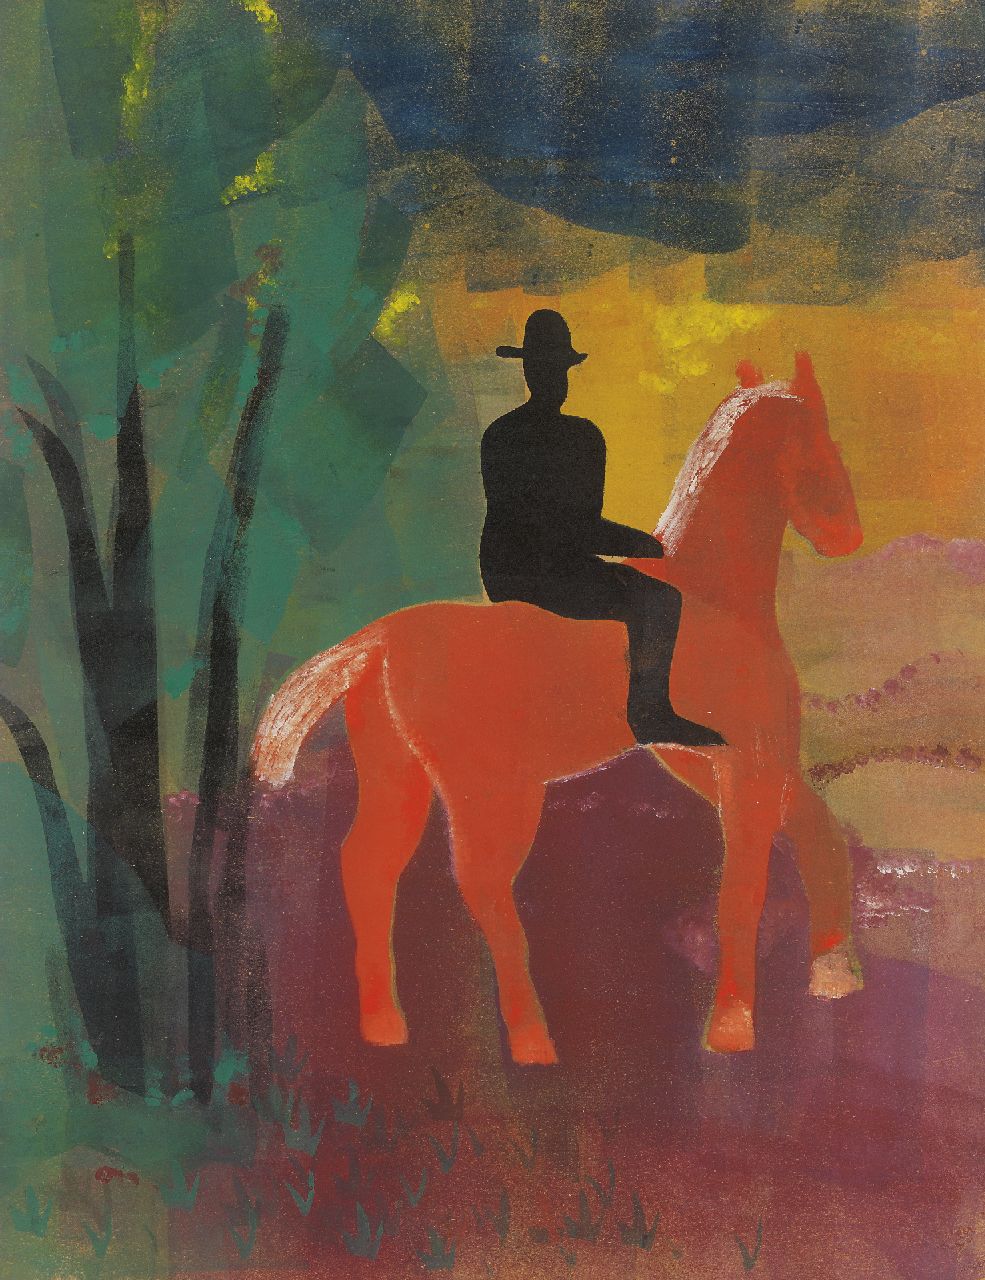 Werkman H.N.  | Hendrik Nicolaas Werkman, A horseman, Chablone, Farbwalze, Druckerfarbe auf Papier 65,0 x 50,0 cm, dated 1944